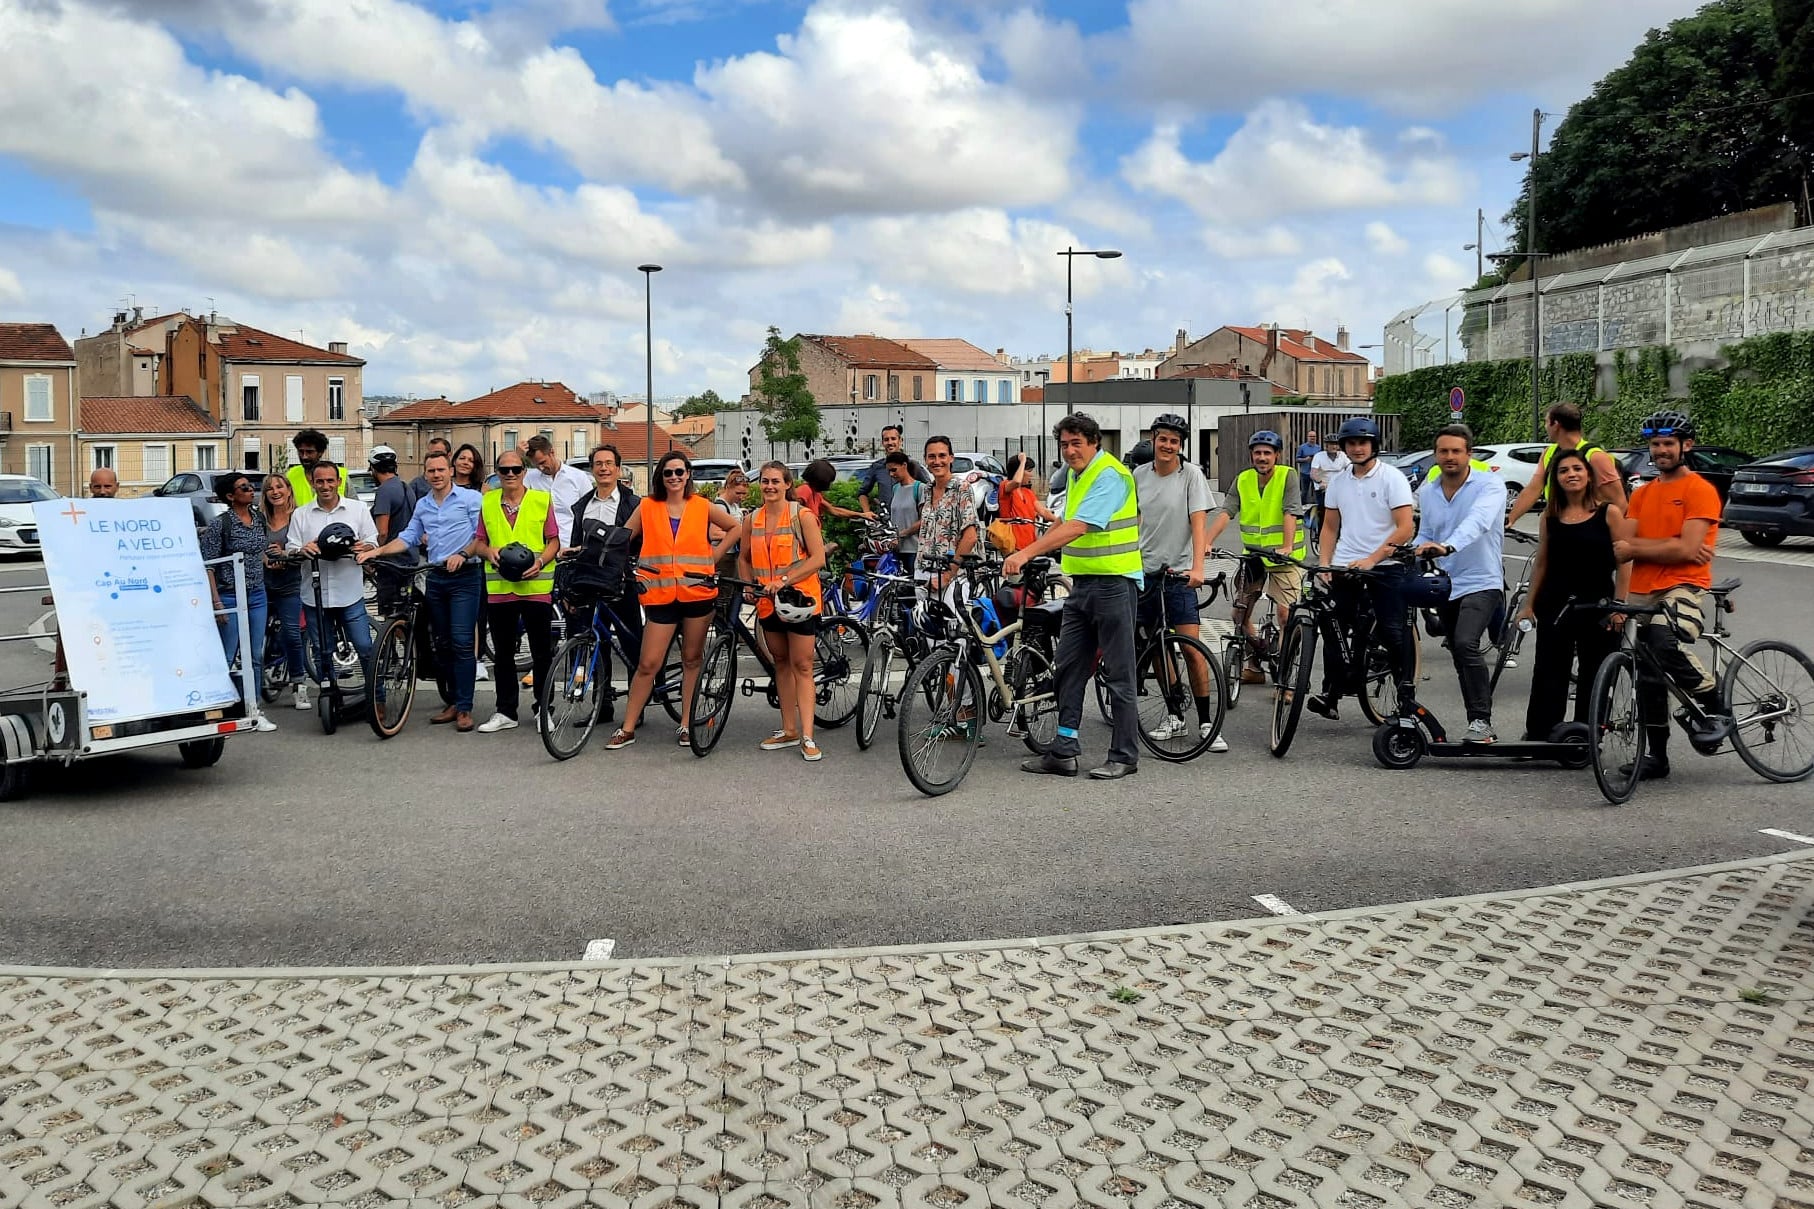 , Les entreprises des quartiers Nord ouvrent la voie aux mobilités douces, Made in Marseille